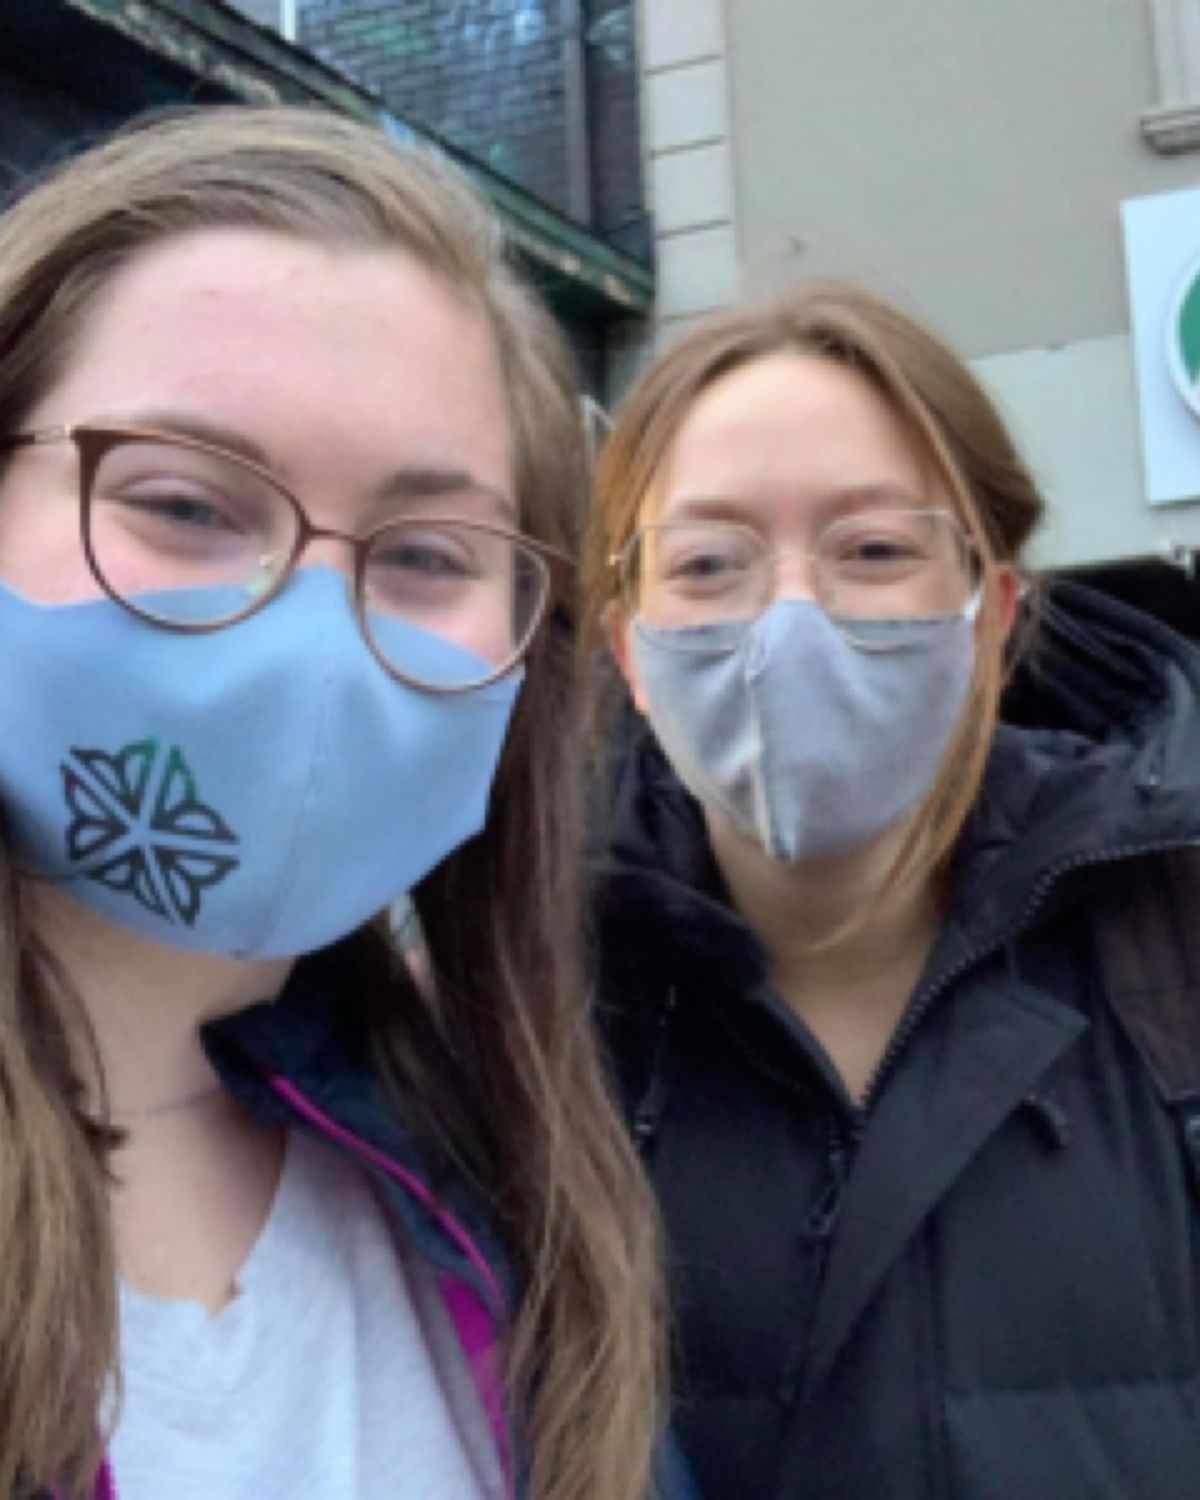 Two smiling girls wearing face masks.